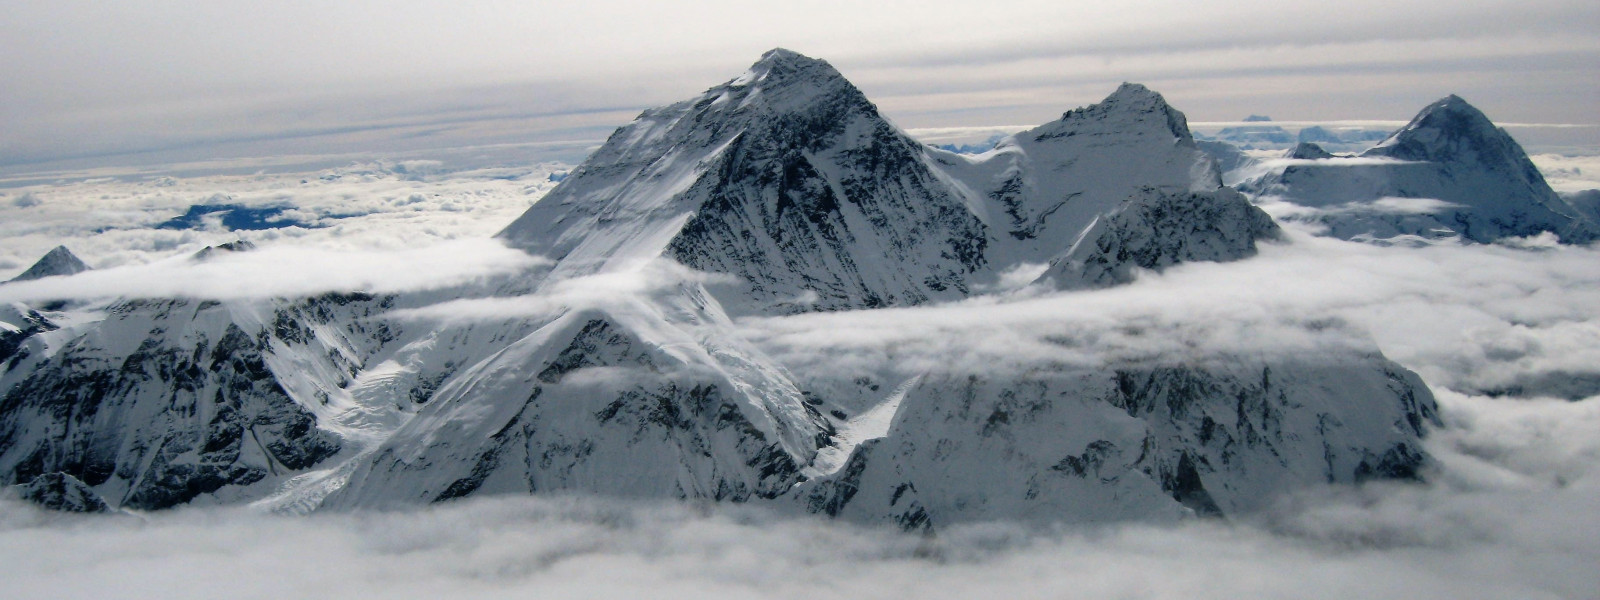 Vol de montagne sur l’Everest